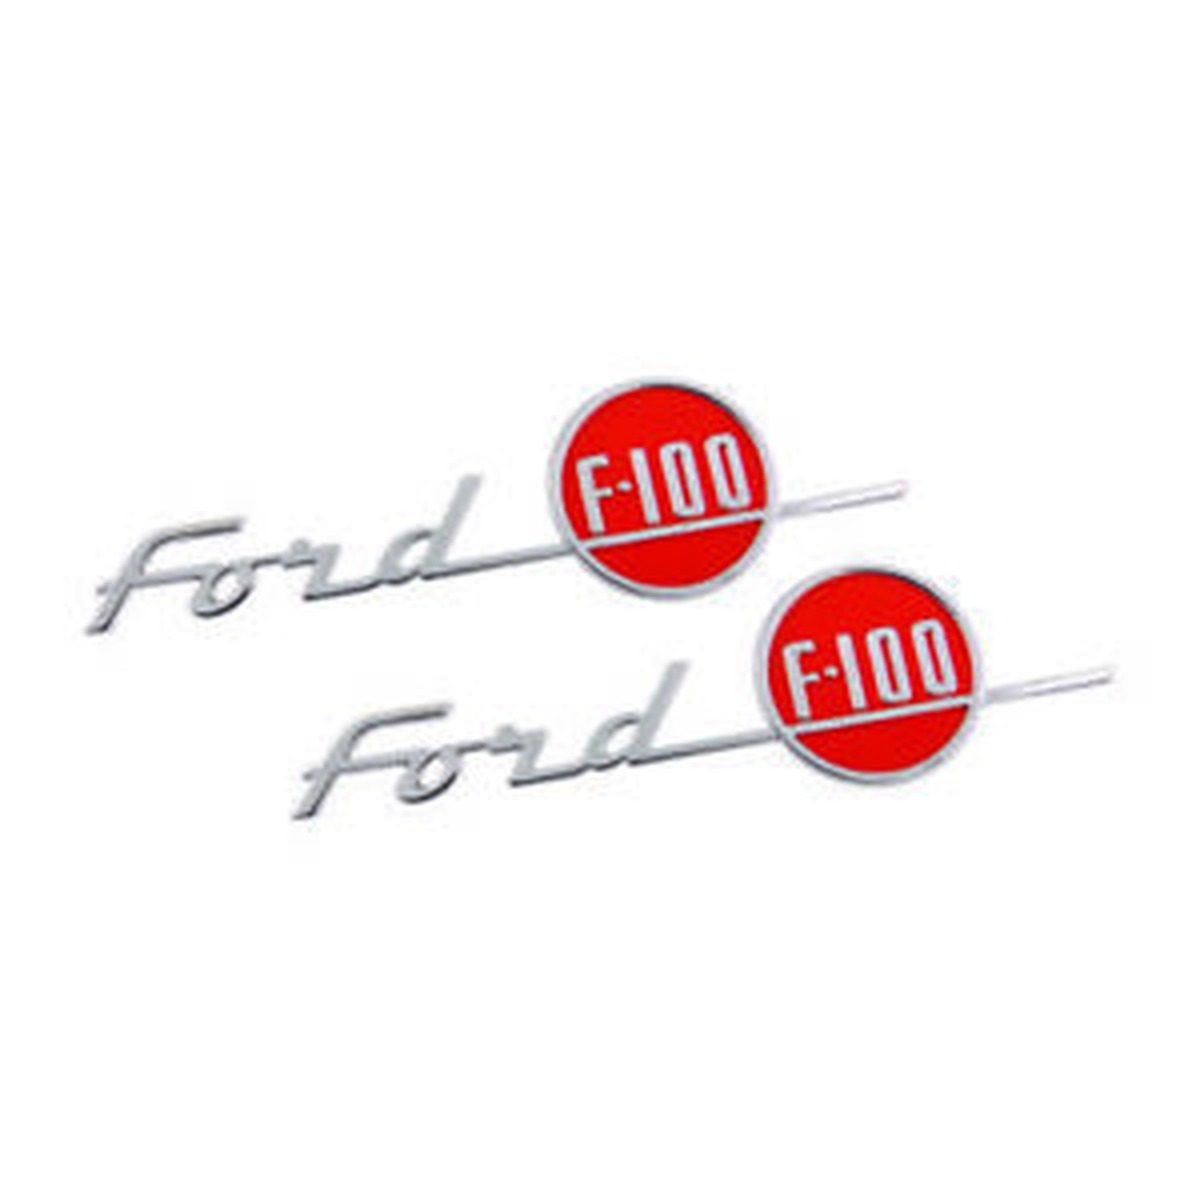 Bonnet/Hood Emblems - Ford F100 - 1955 com